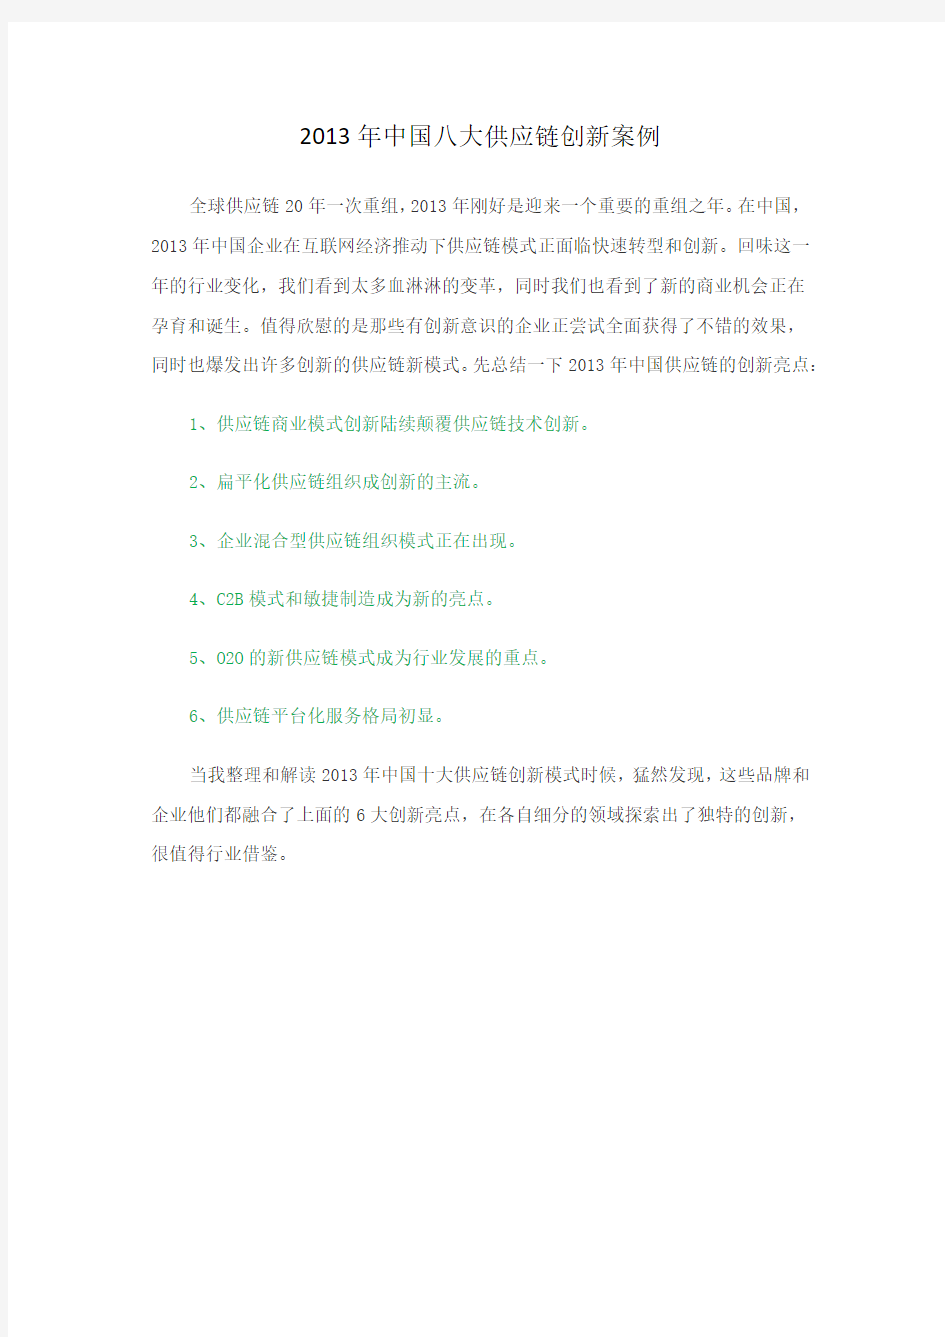 2013年中国八大供应链创新案例